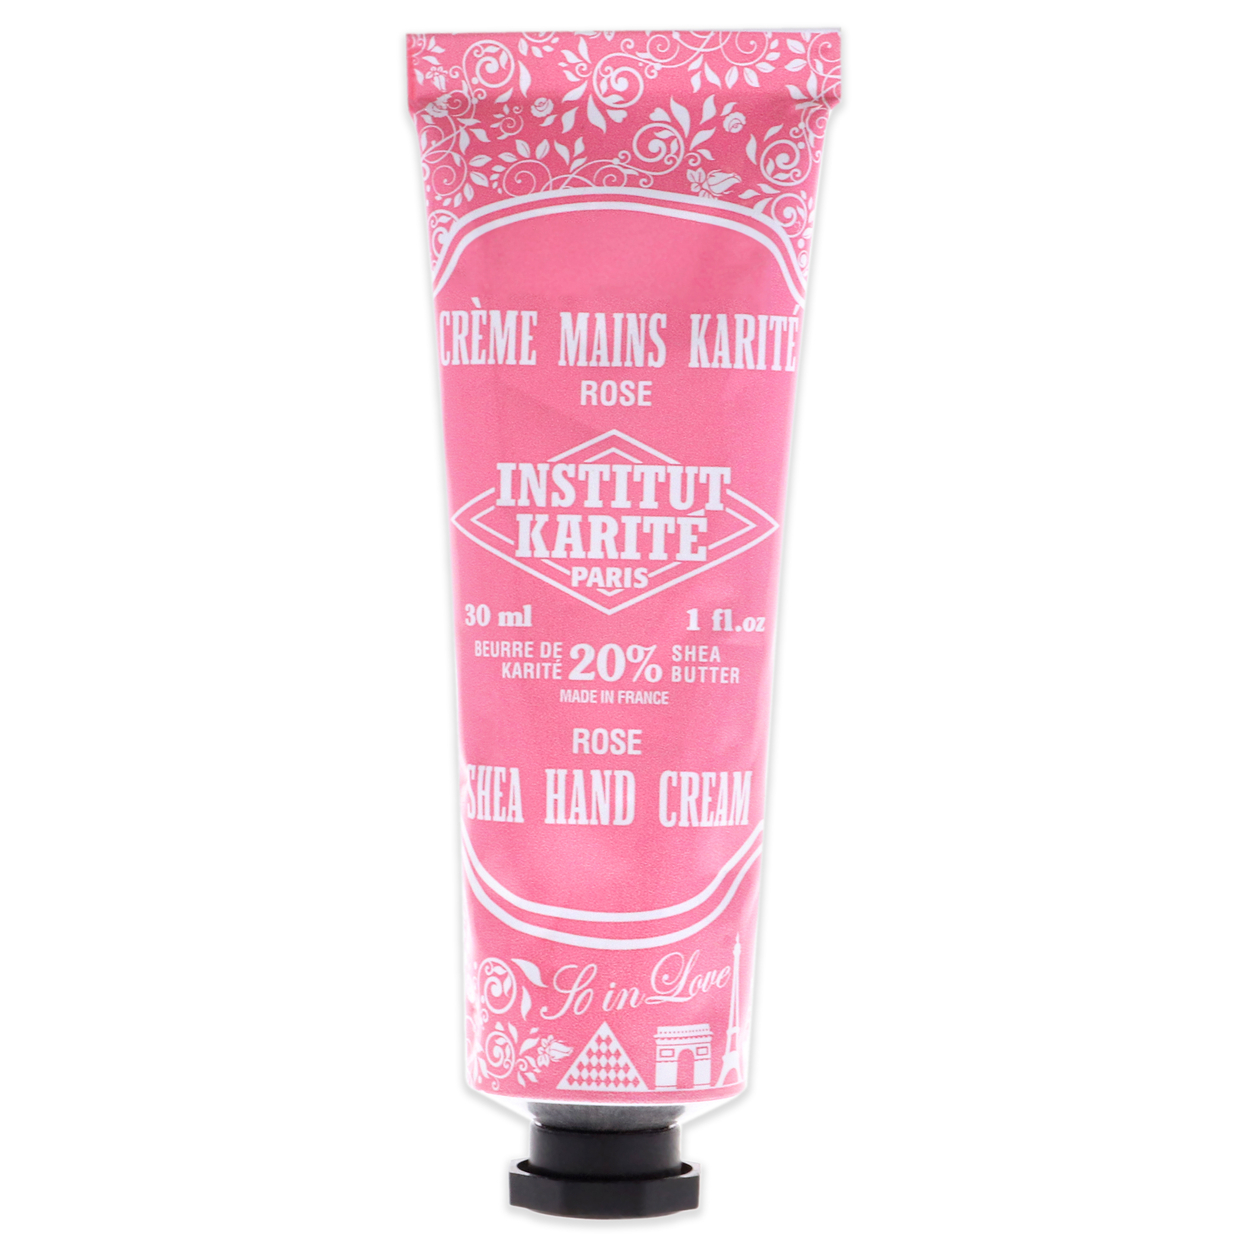 Institut Karite Paris Shea Hand Cream So In Love - Rose 1 Oz